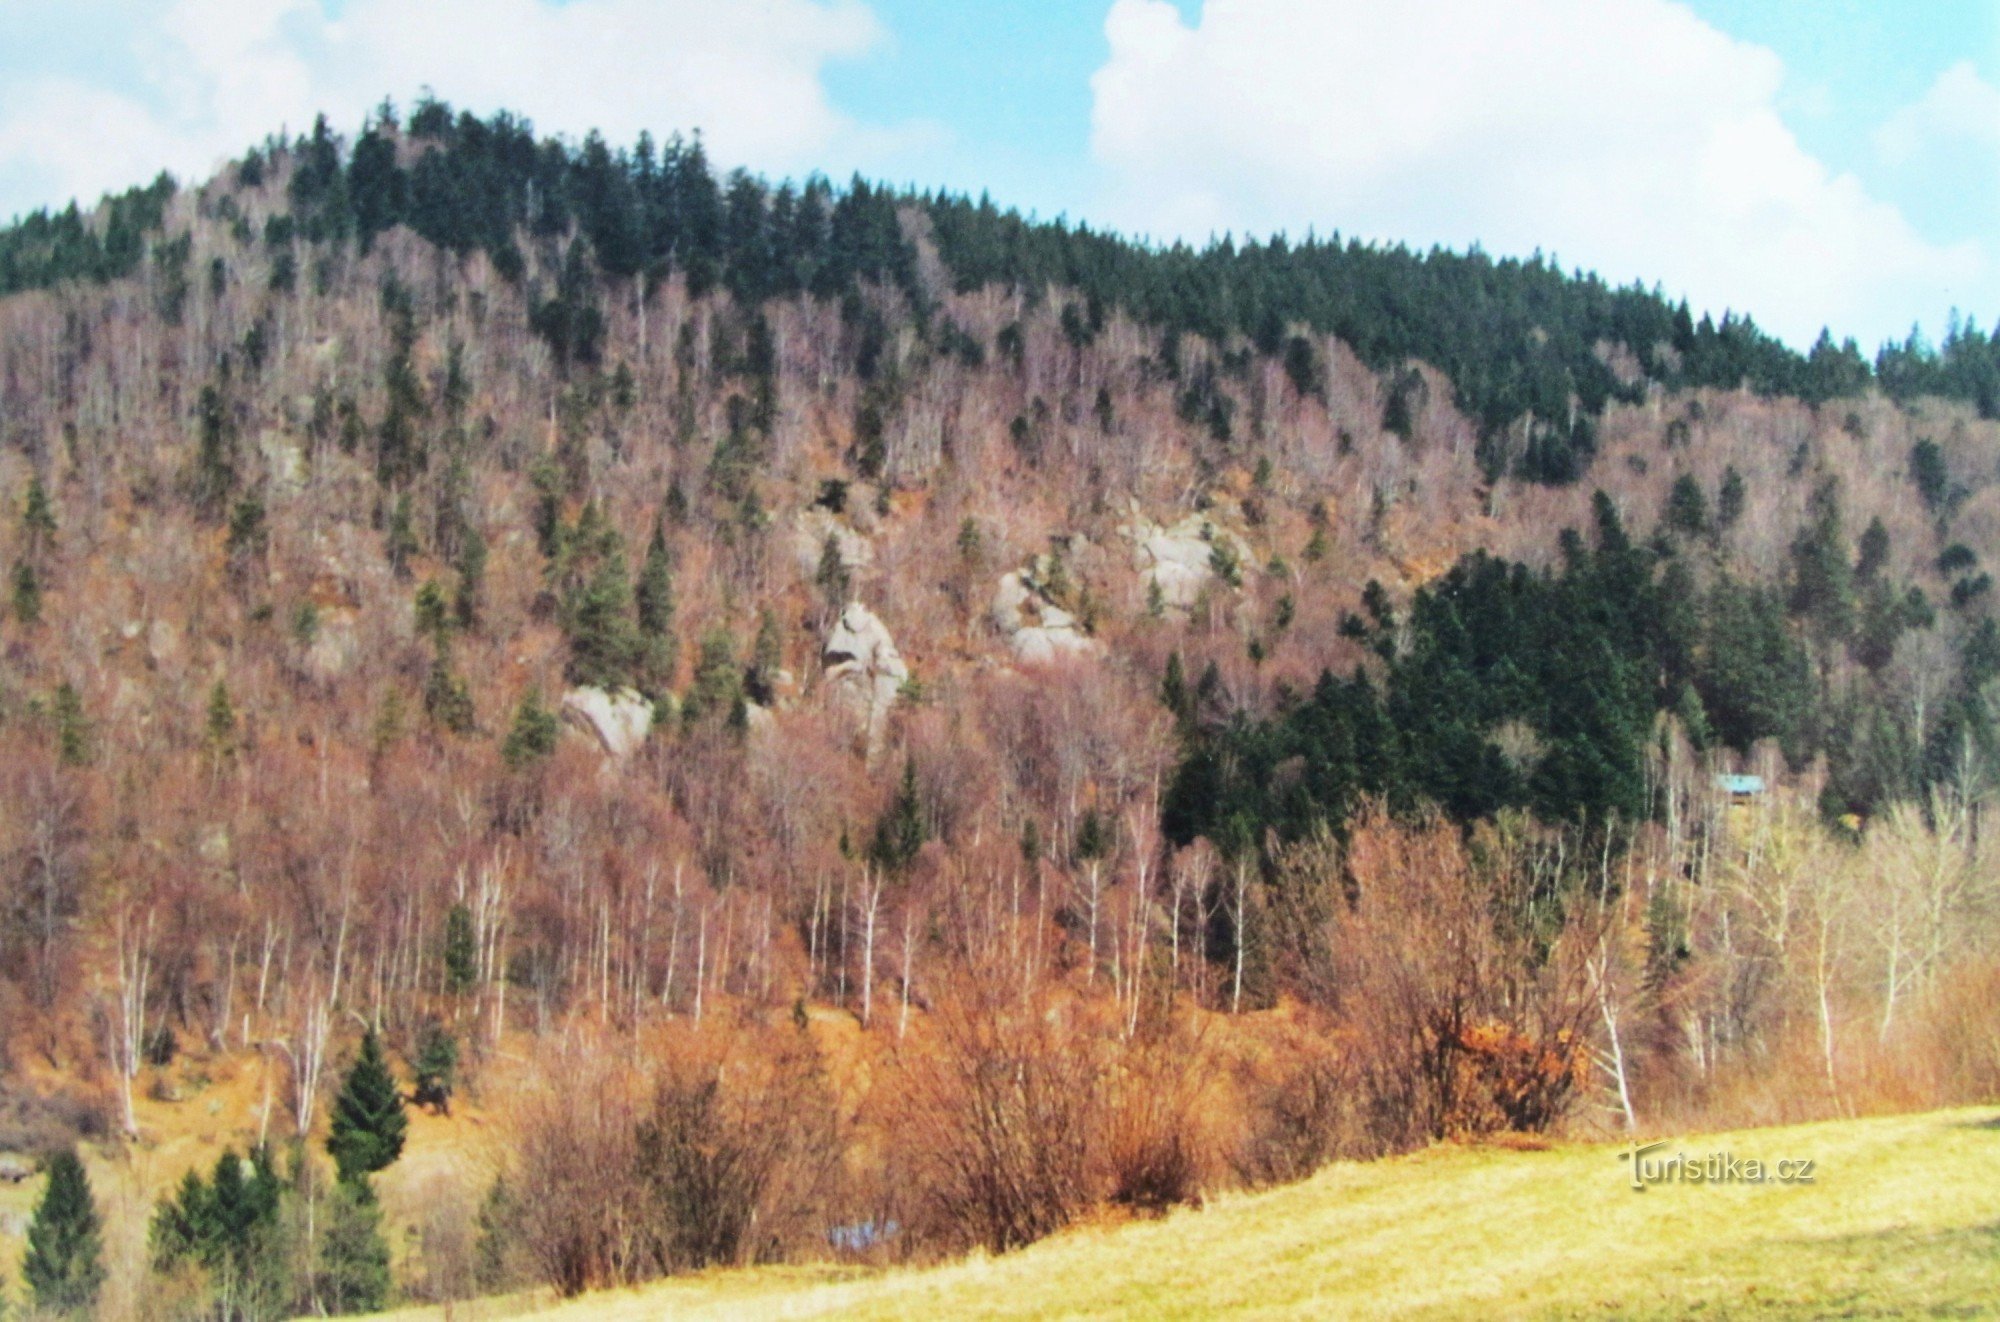 Đá trên dốc Hradisk ở cuối thung lũng